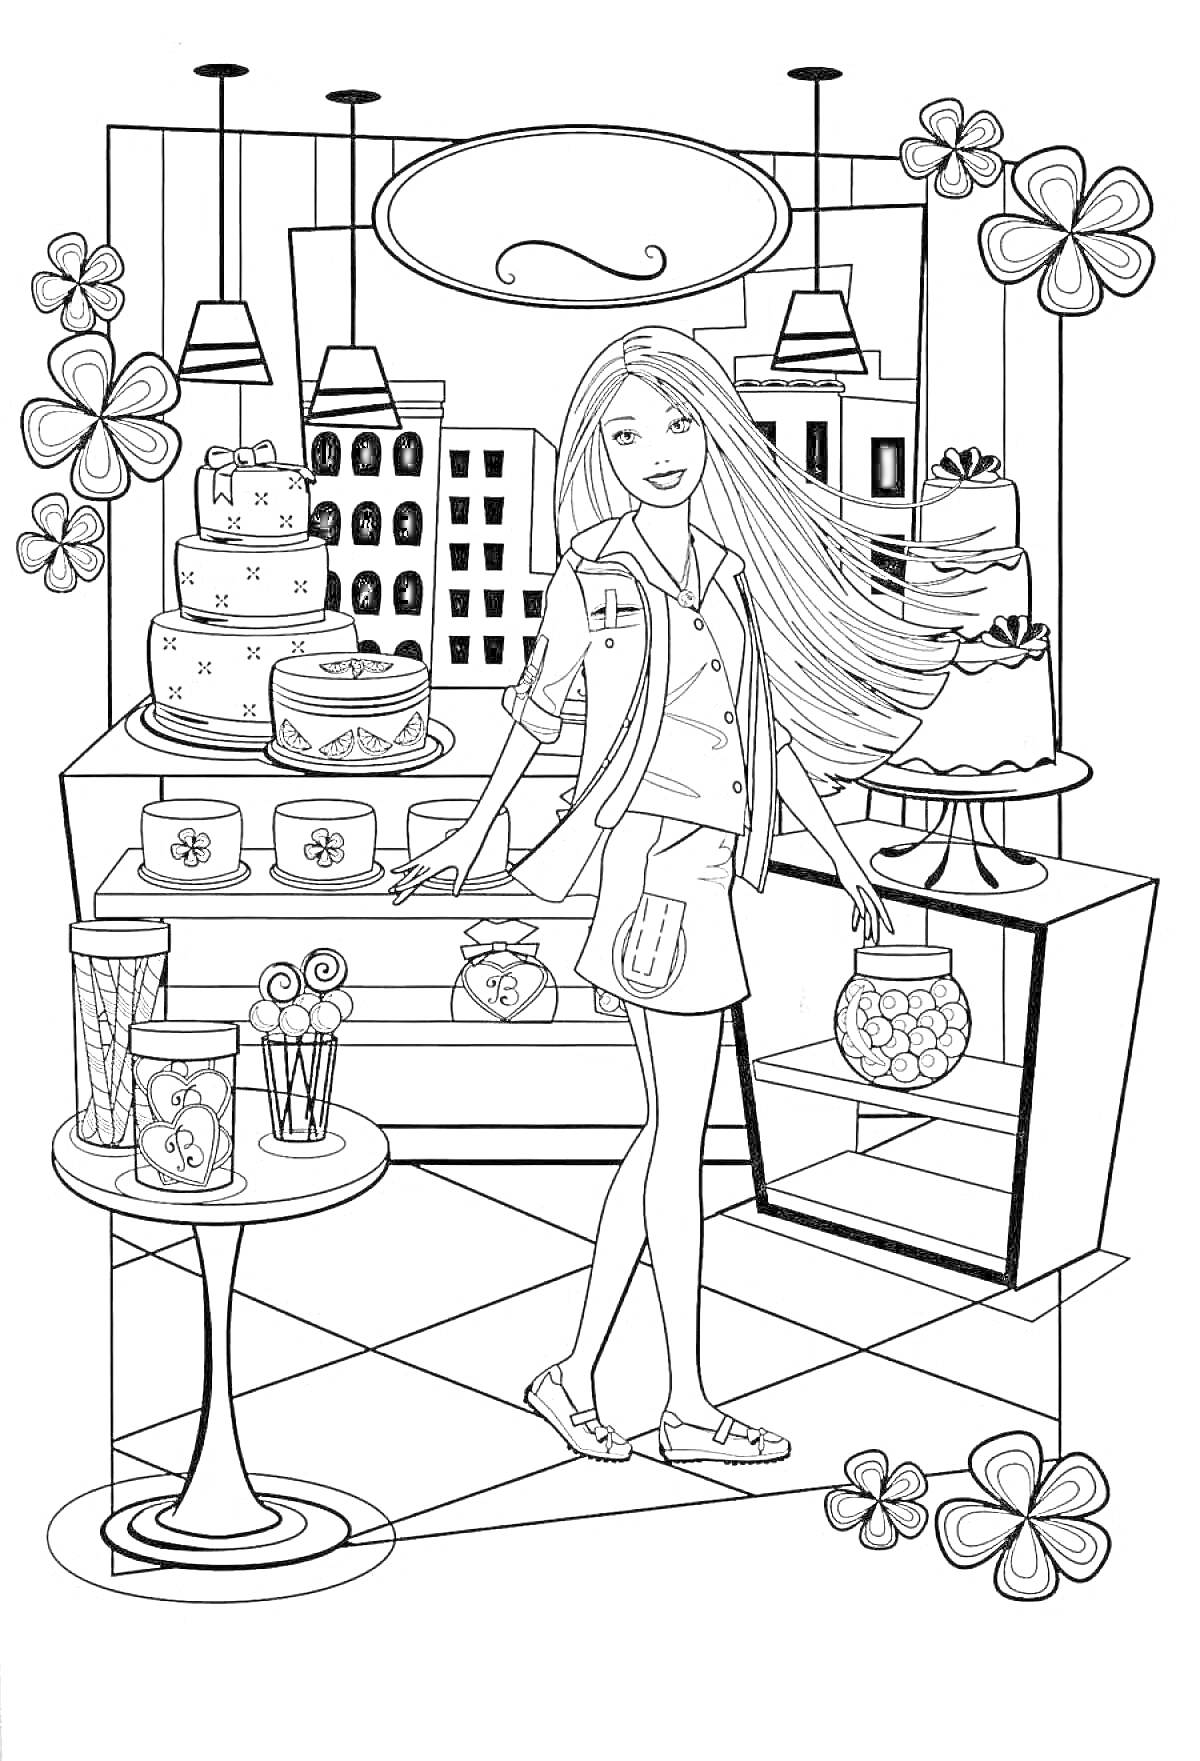 Раскраска Барби доктор в кондитерской с тортами, пирожными и цветами